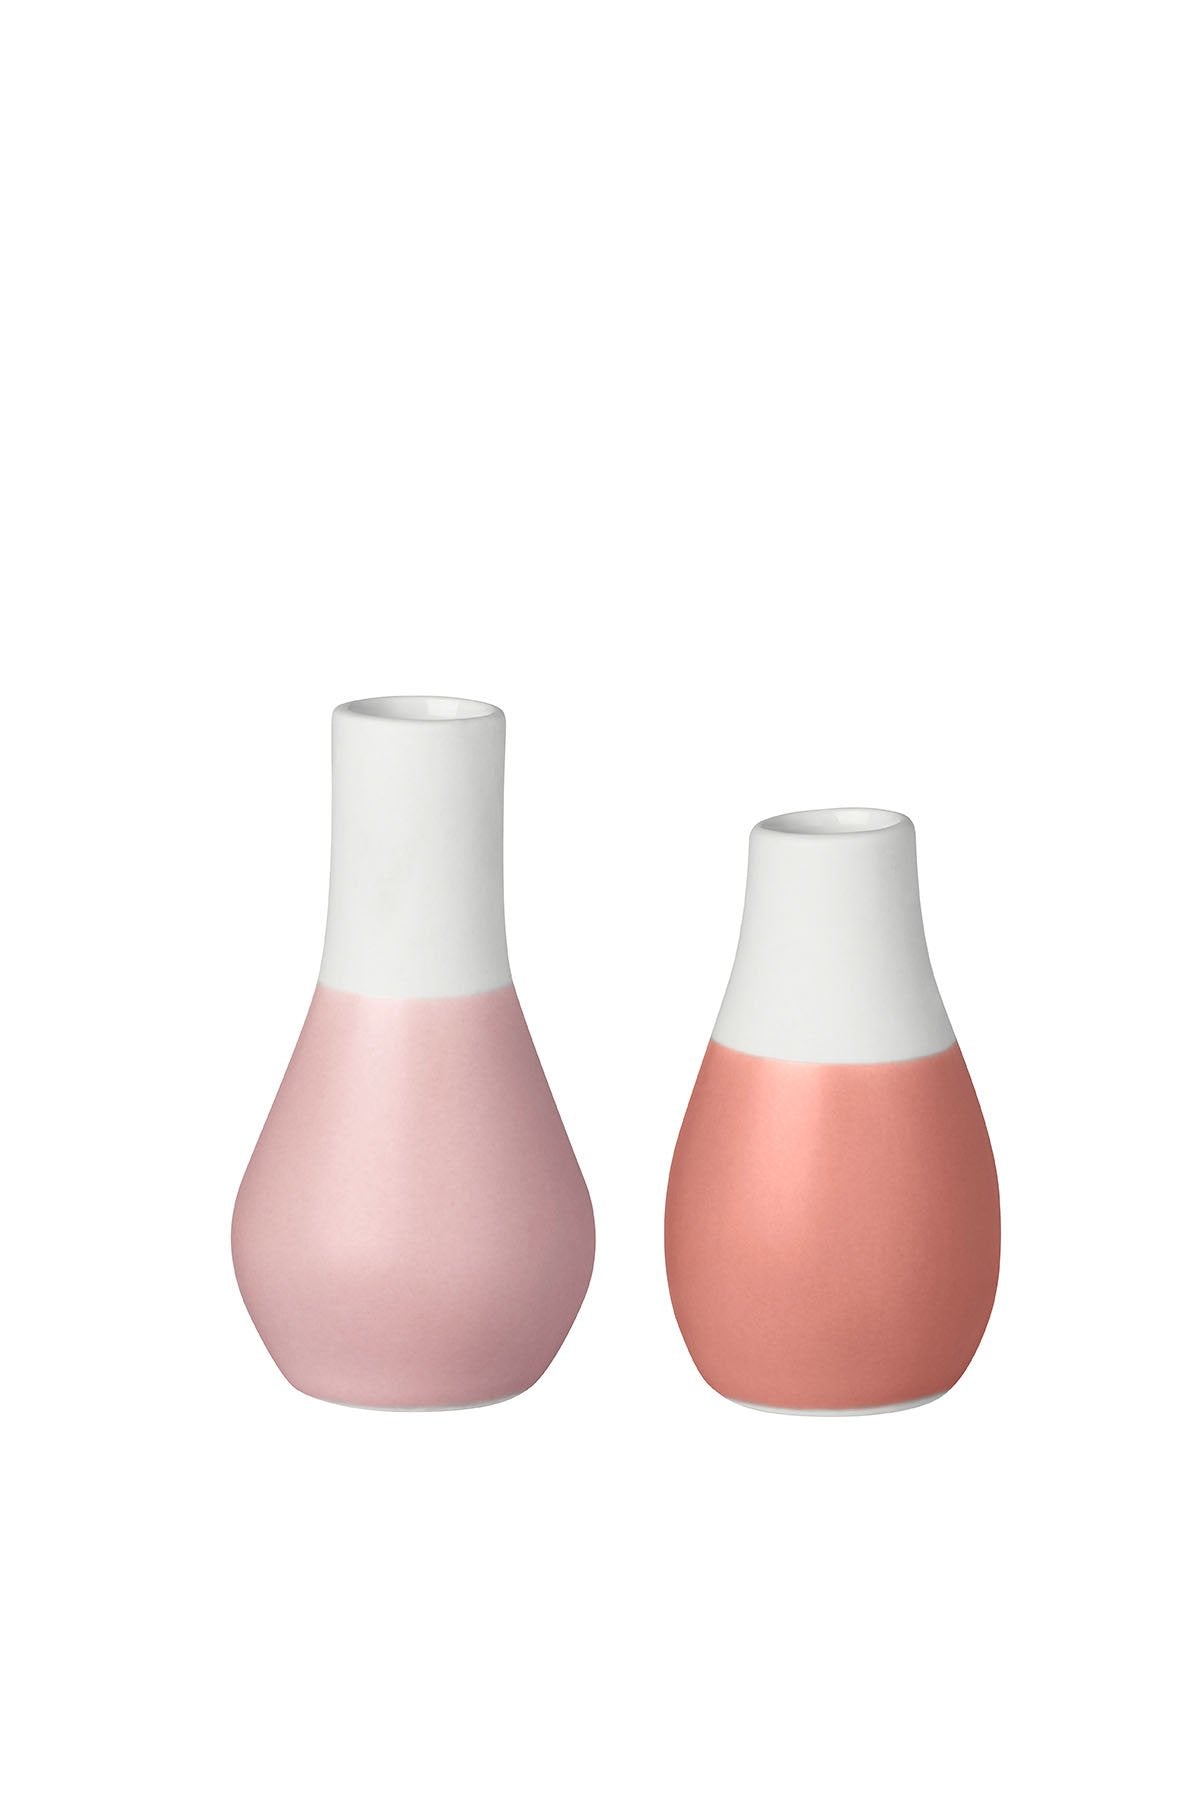 Mini Pastelvasen Set aus 4 Vasen Pudertöne Vasen Räder 